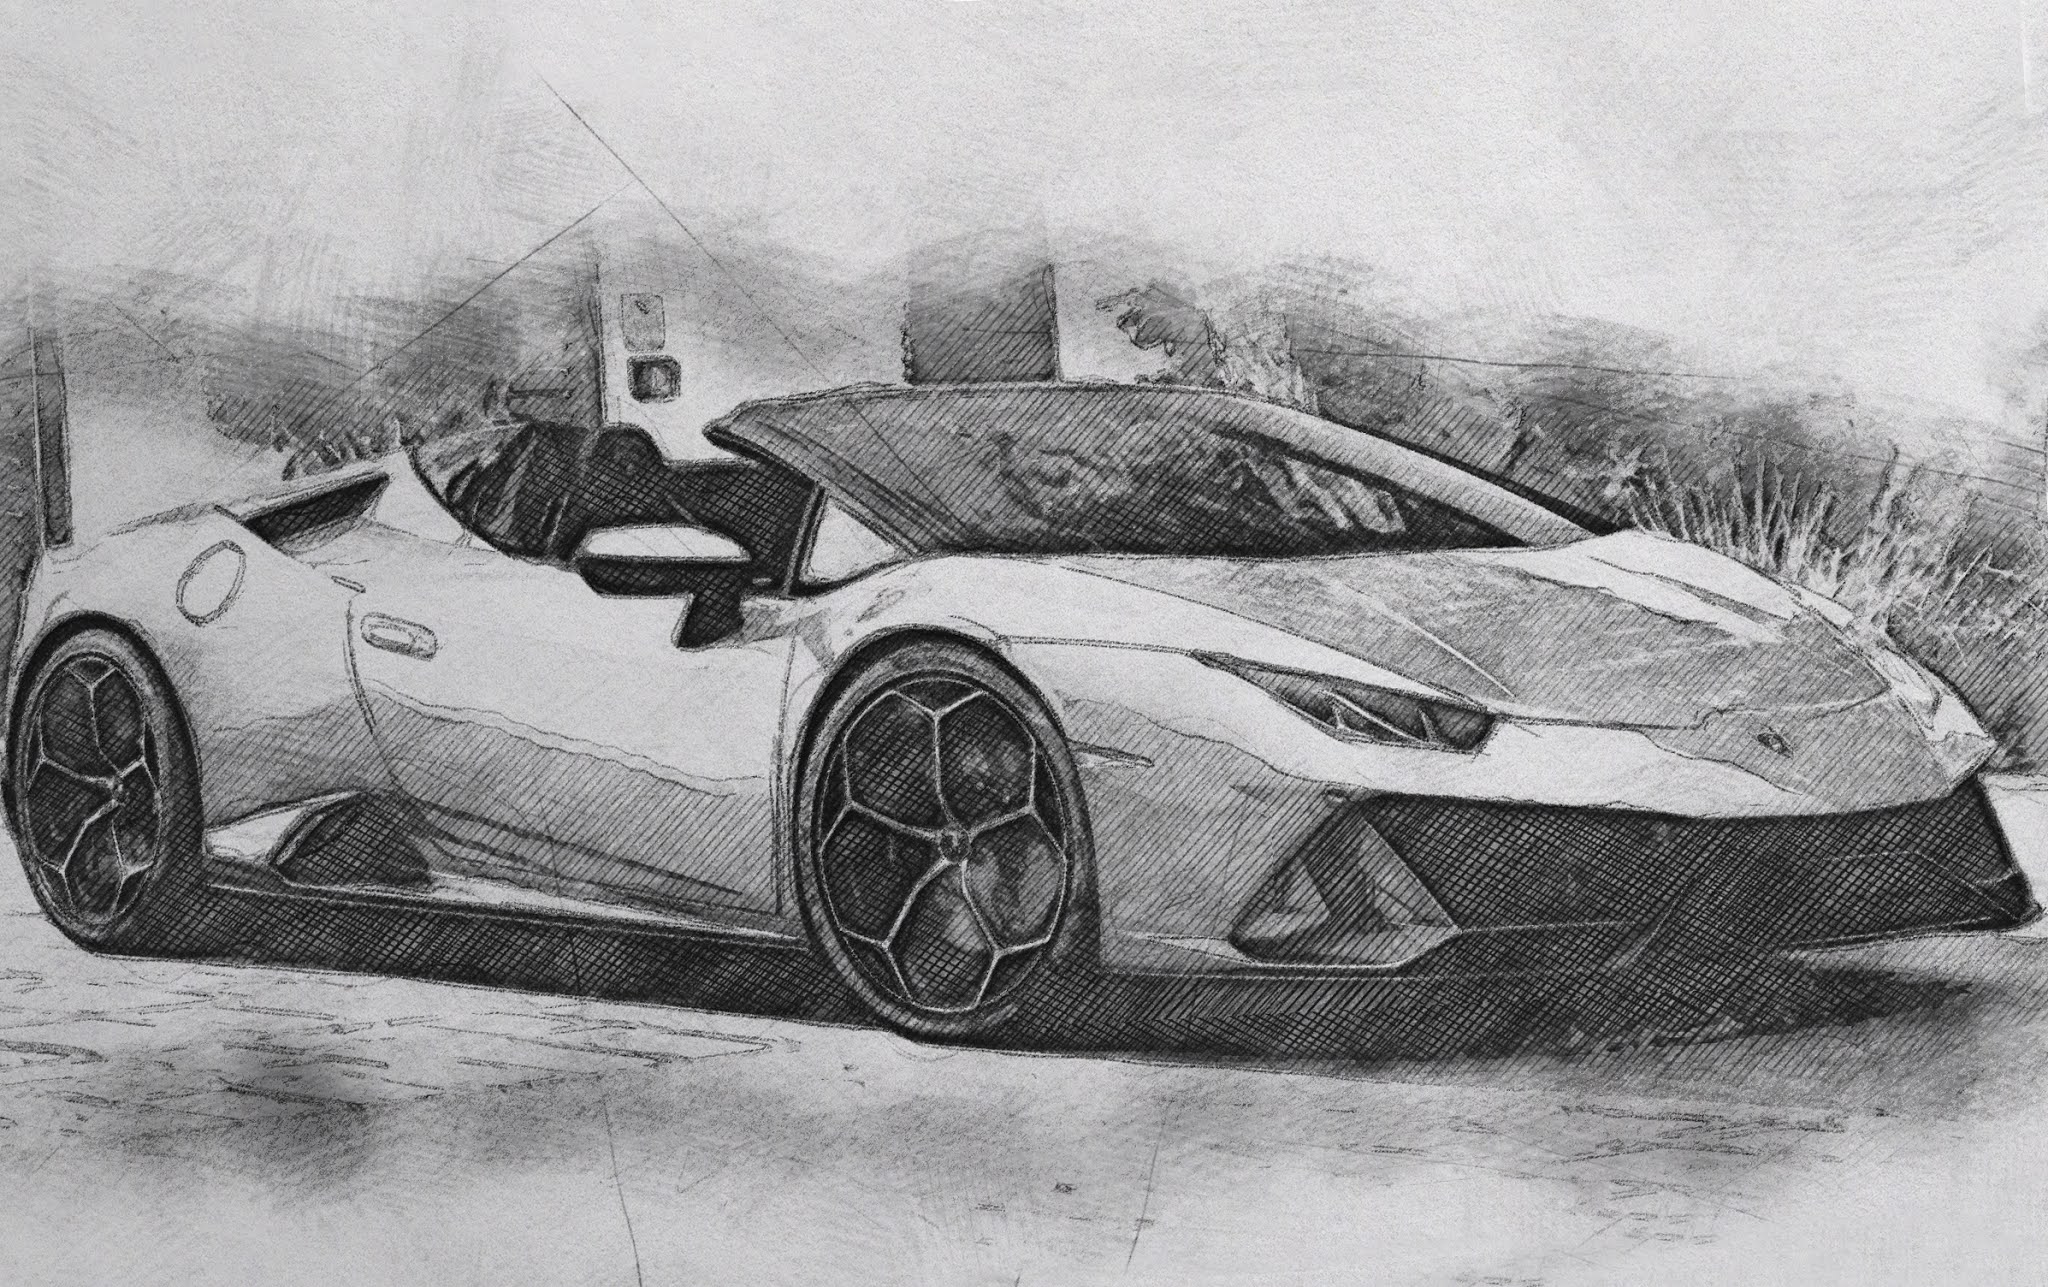 Lamborghini Huracan Evo Drawing